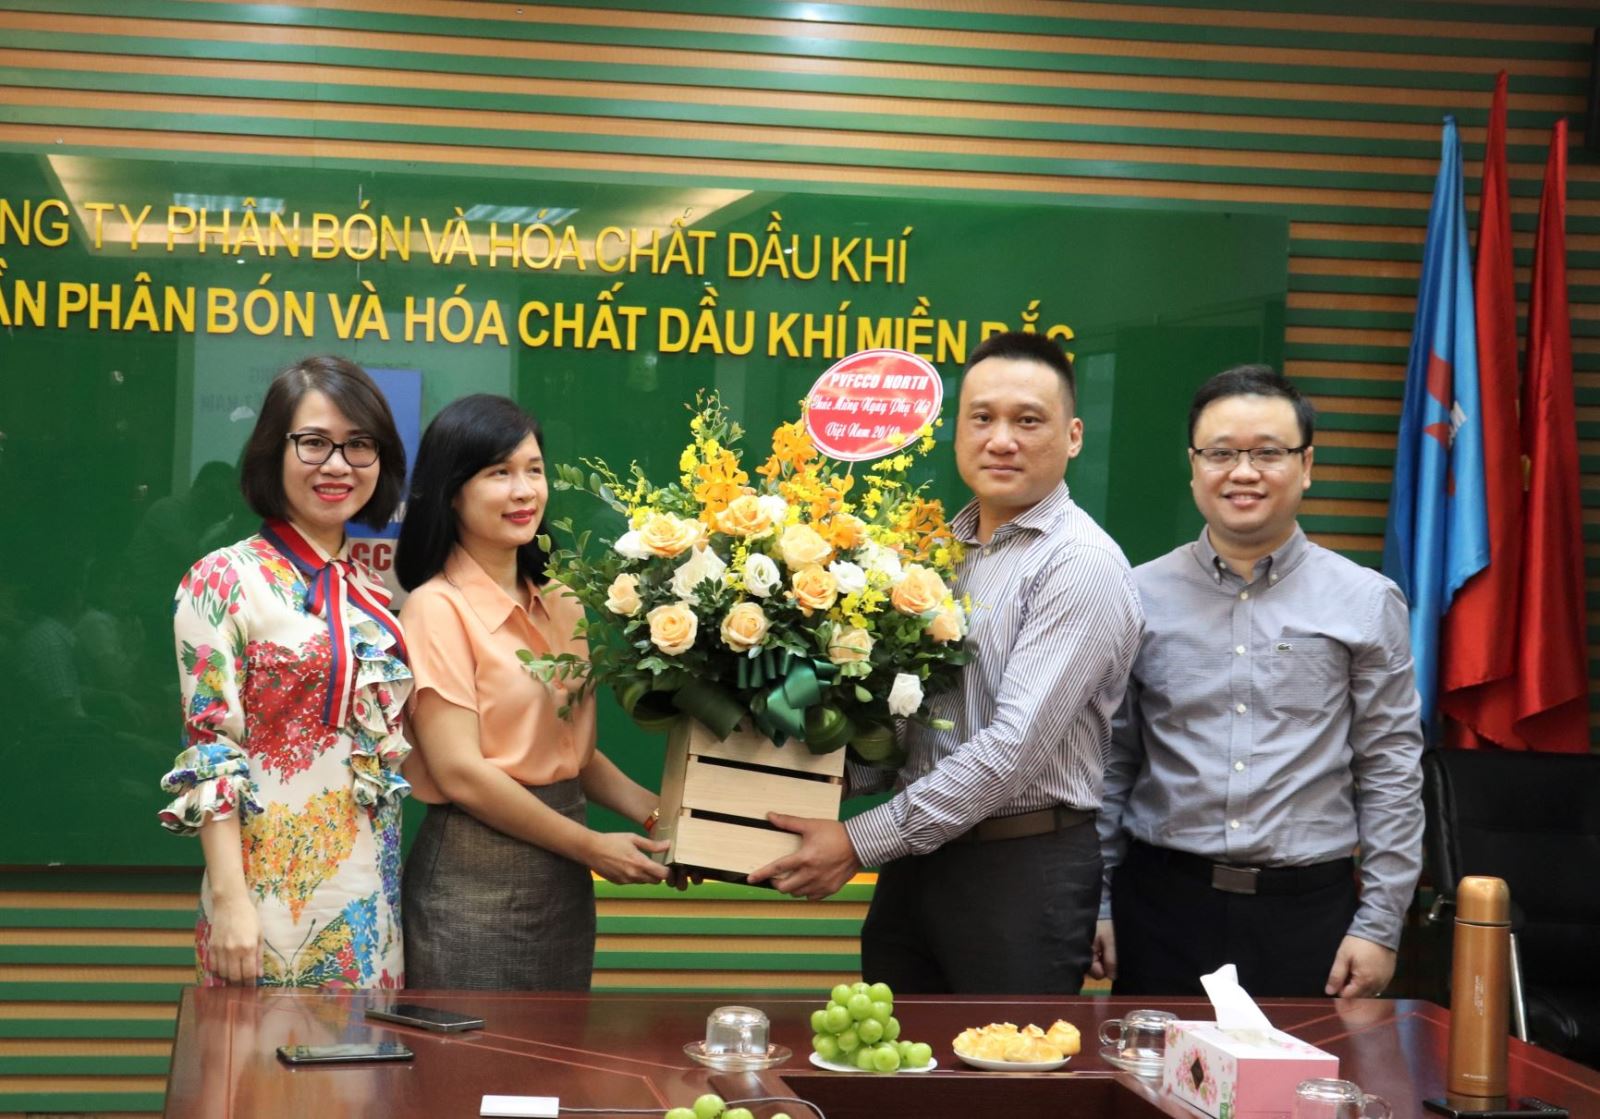 PVFCCo North tổ chức chào mừng kỷ niệm 91 năm ngày thành lập Hội liên hiệp phụ nữ Việt Nam (20/10/1930-20/10/2021)